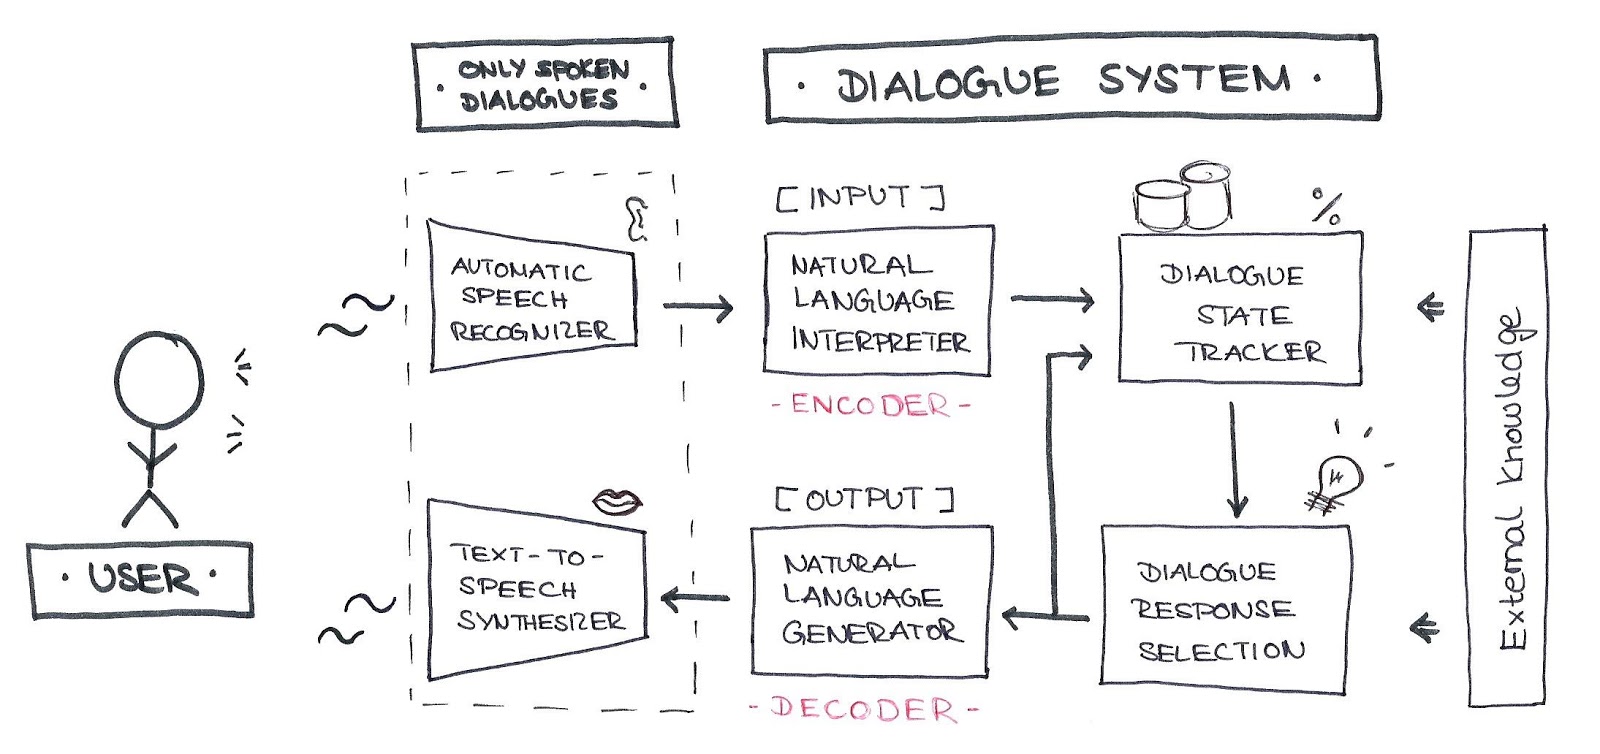 Architektur von Dialogsystemen, angelehnt an Serban et al. 2015